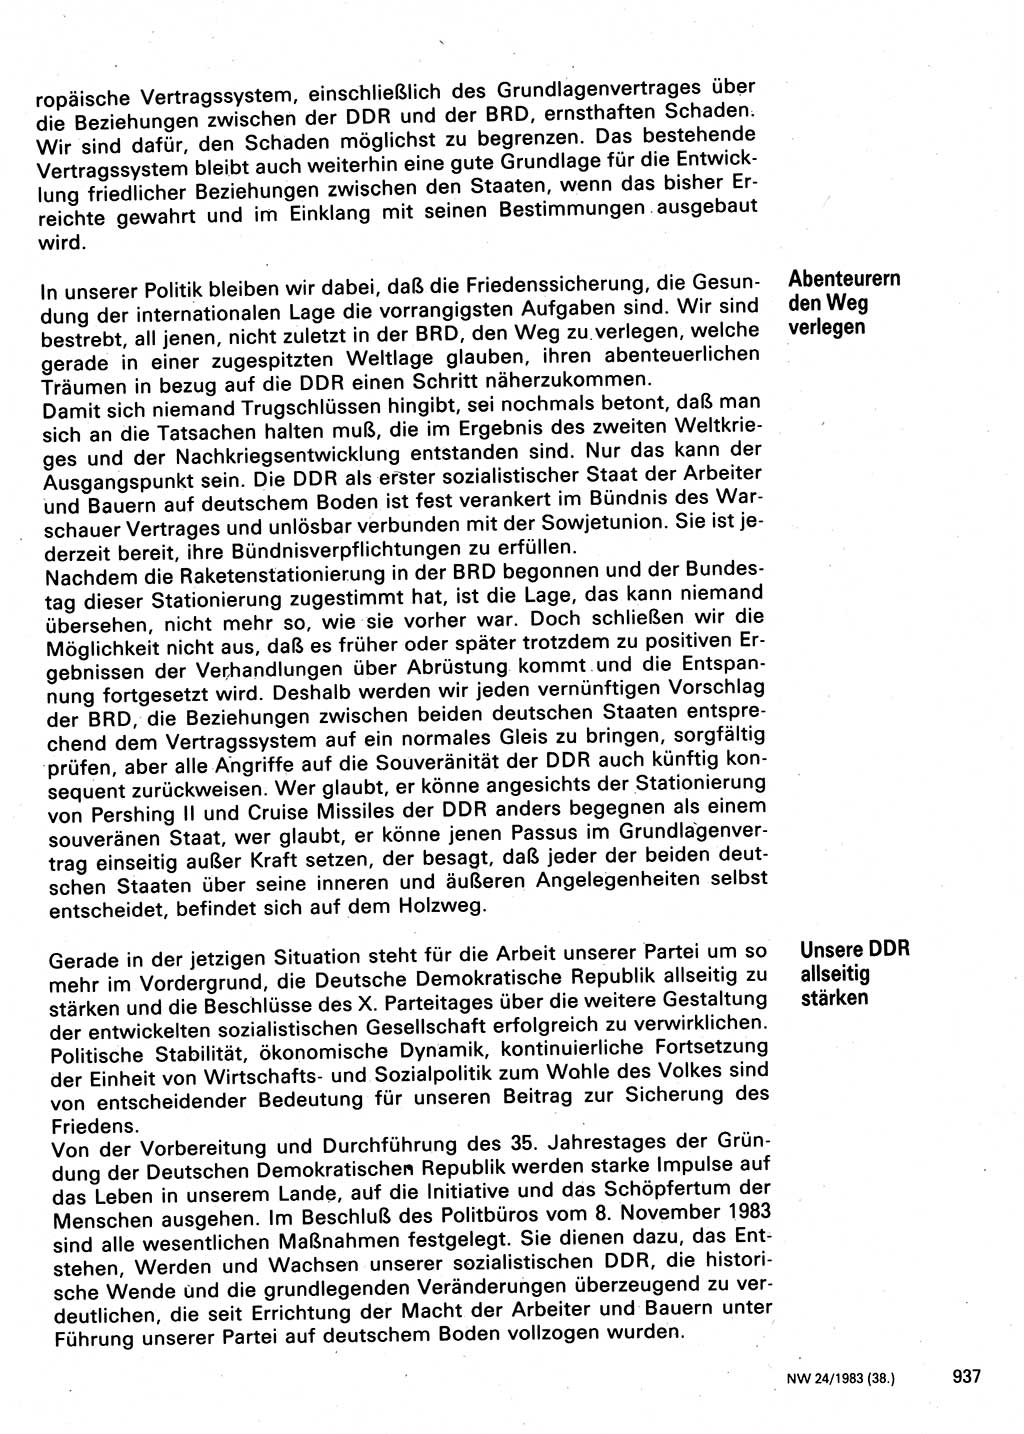 Neuer Weg (NW), Organ des Zentralkomitees (ZK) der SED (Sozialistische Einheitspartei Deutschlands) für Fragen des Parteilebens, 38. Jahrgang [Deutsche Demokratische Republik (DDR)] 1983, Seite 937 (NW ZK SED DDR 1983, S. 937)